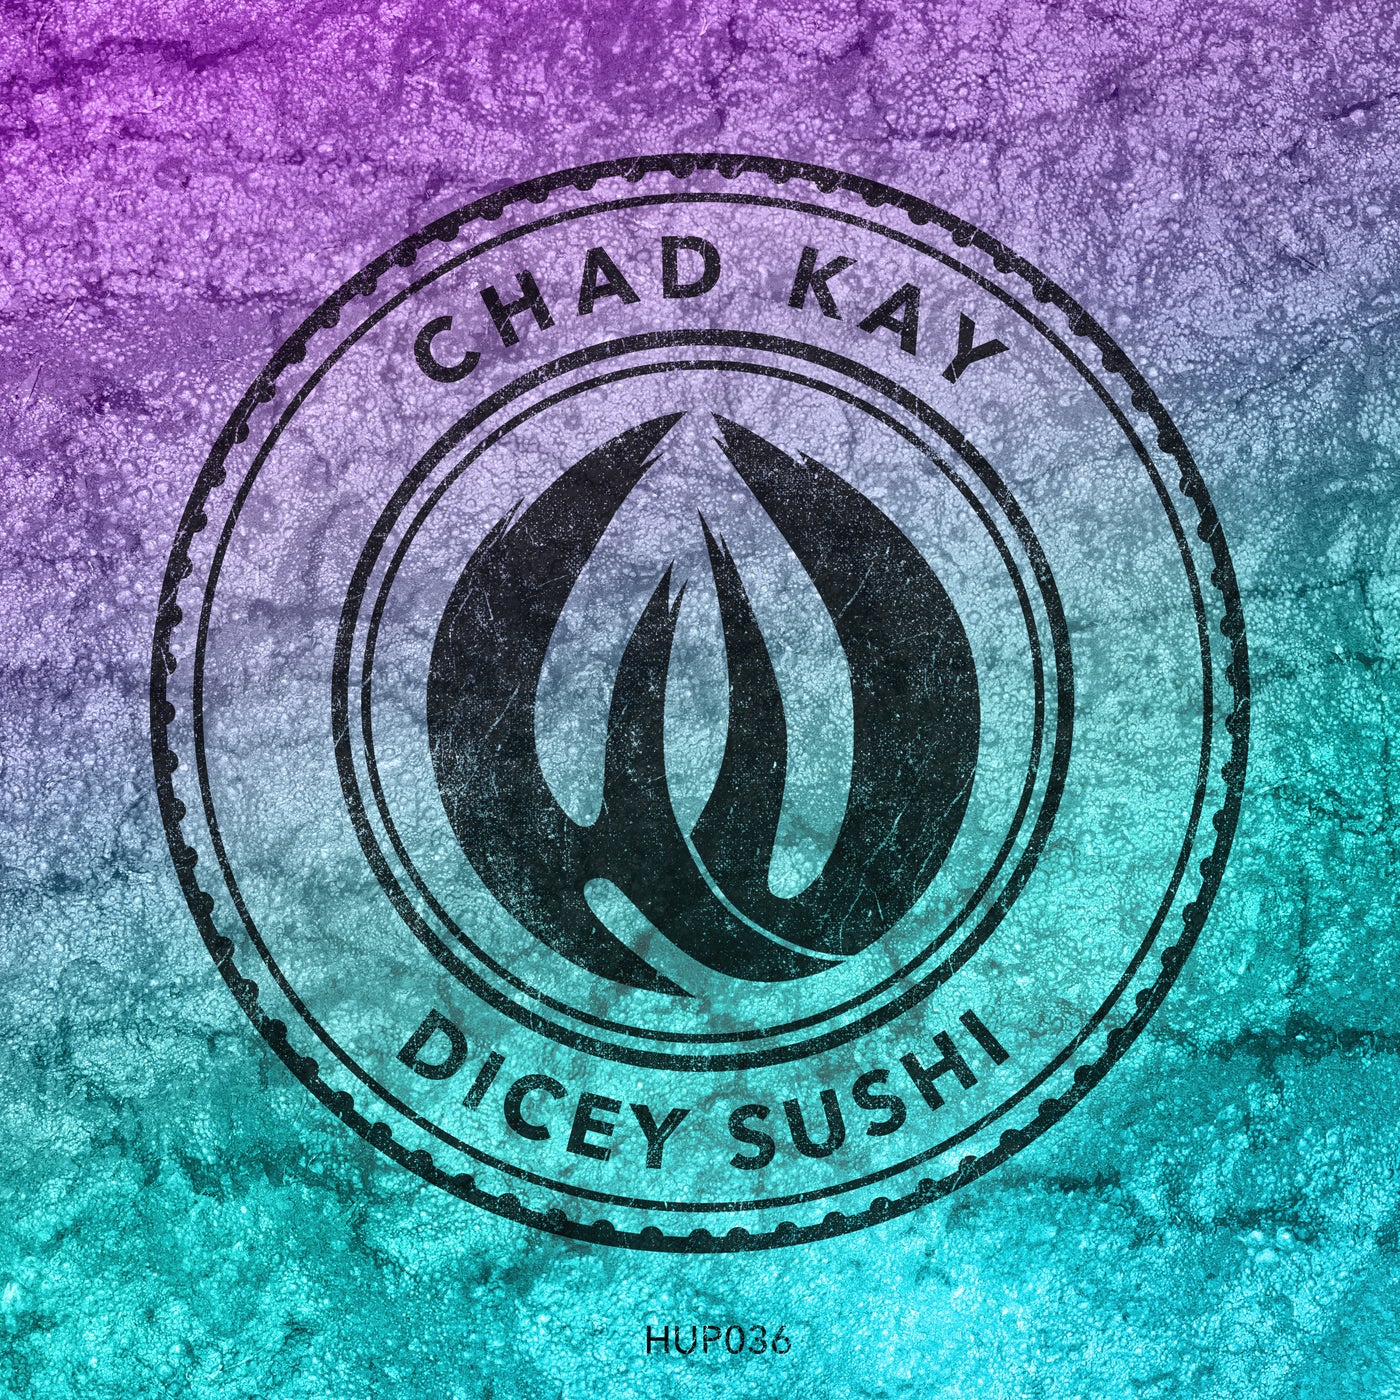 Chad Kay – Dicey Sushi [HUP036]